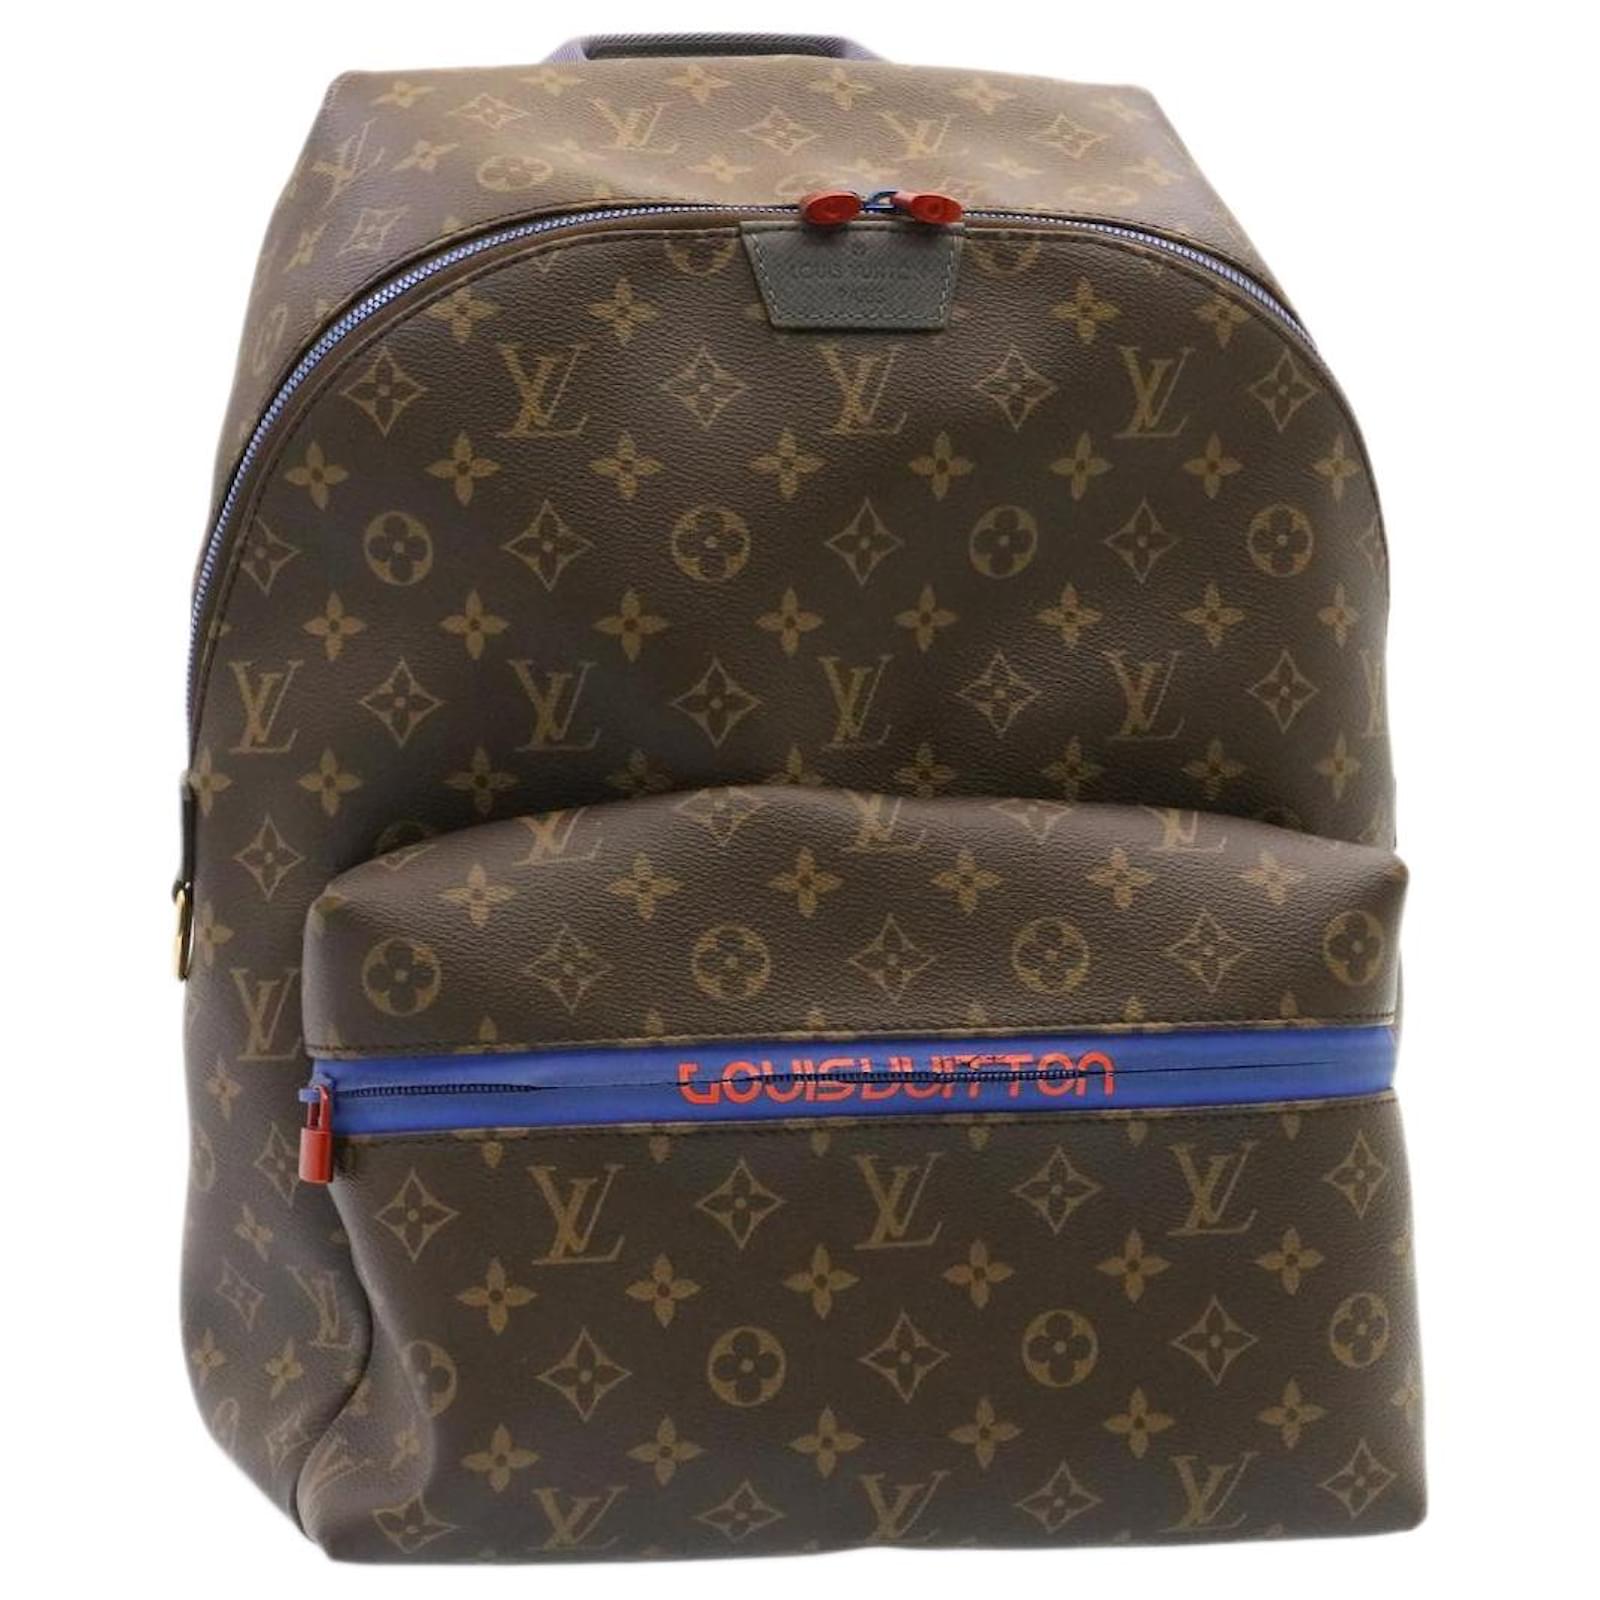 Louis Vuitton Apollo Backpack